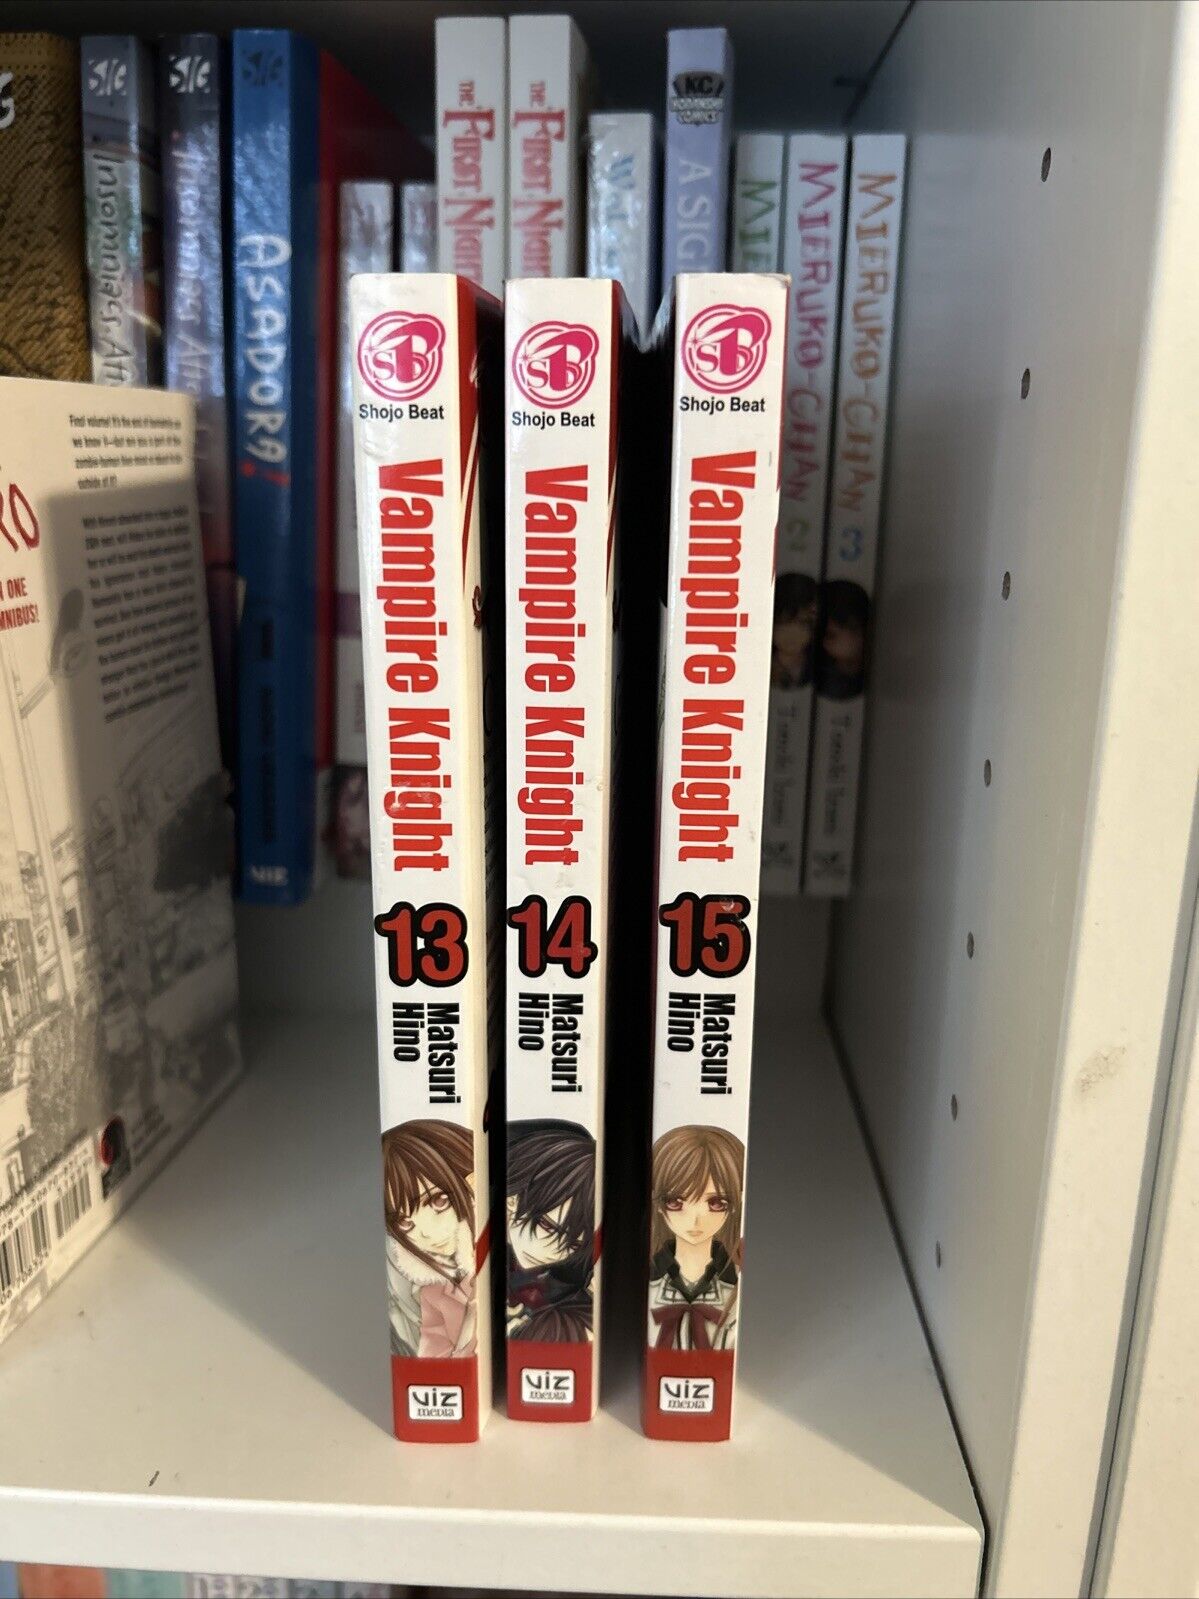 vampire knight manga lot 13 , 14, 15